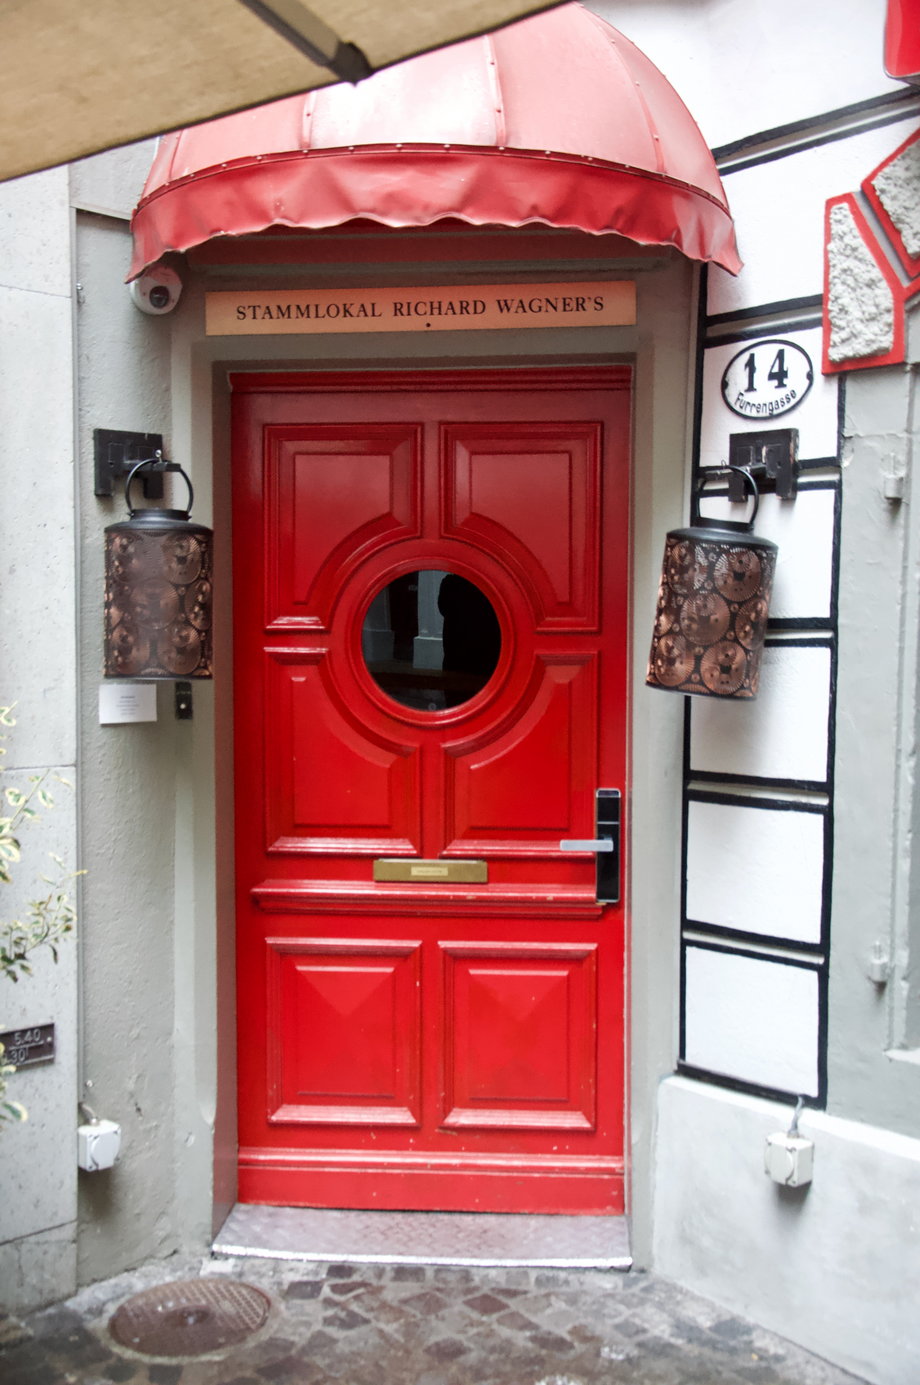 Kilka kroków od ratusza, przy jednej z uliczek, uwagę przykuwają czerwone drzwi. Dziś prowadzą do chińskiej restauracji, niegdyś - do mieszkania, w którym zatrzymał się kompozytor Ryszard Wagner. 